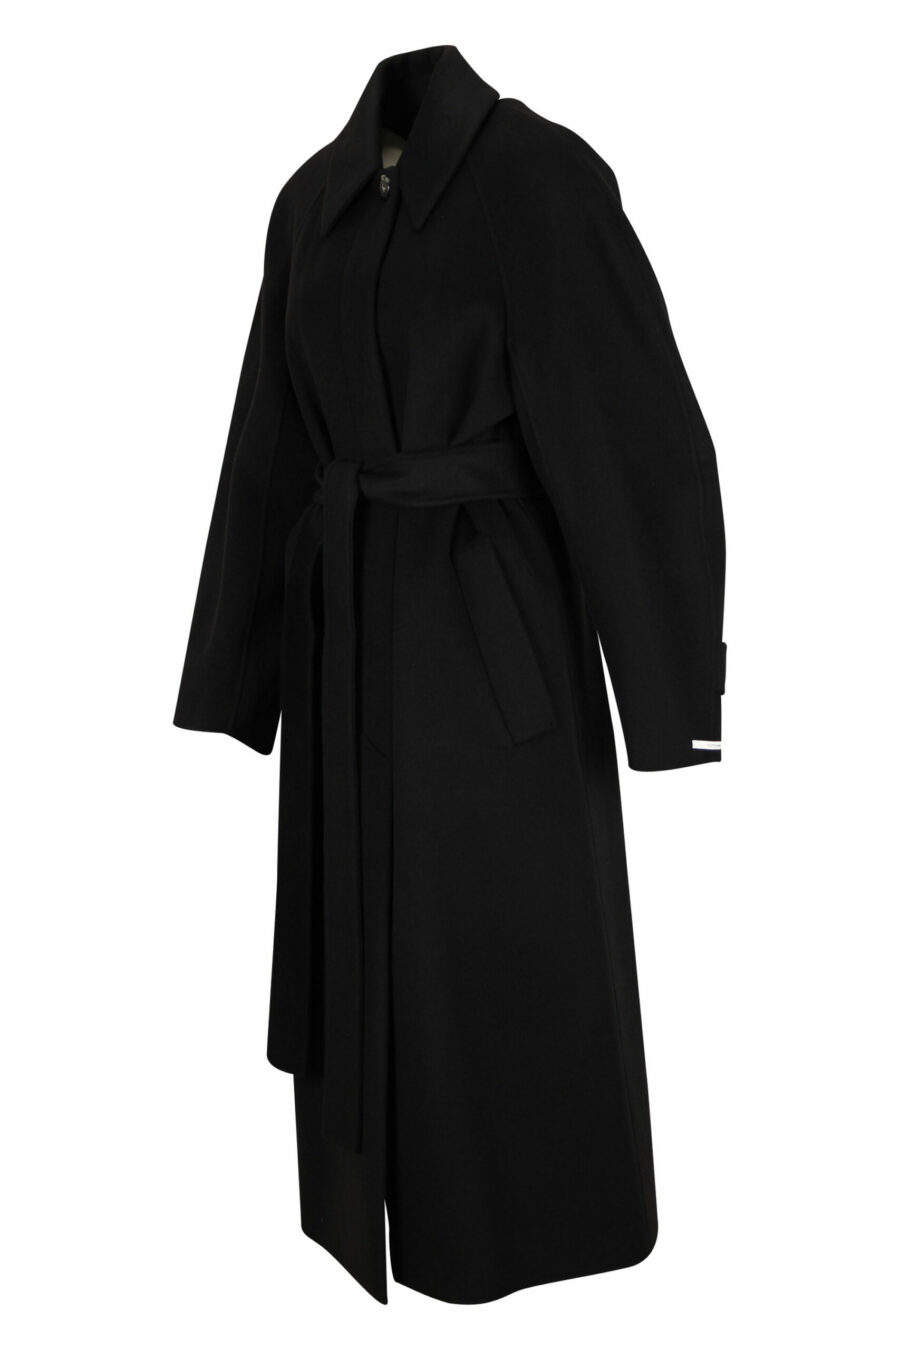 Abrigo negro largo de lana y cashmere - 20110341060042 1 scaled